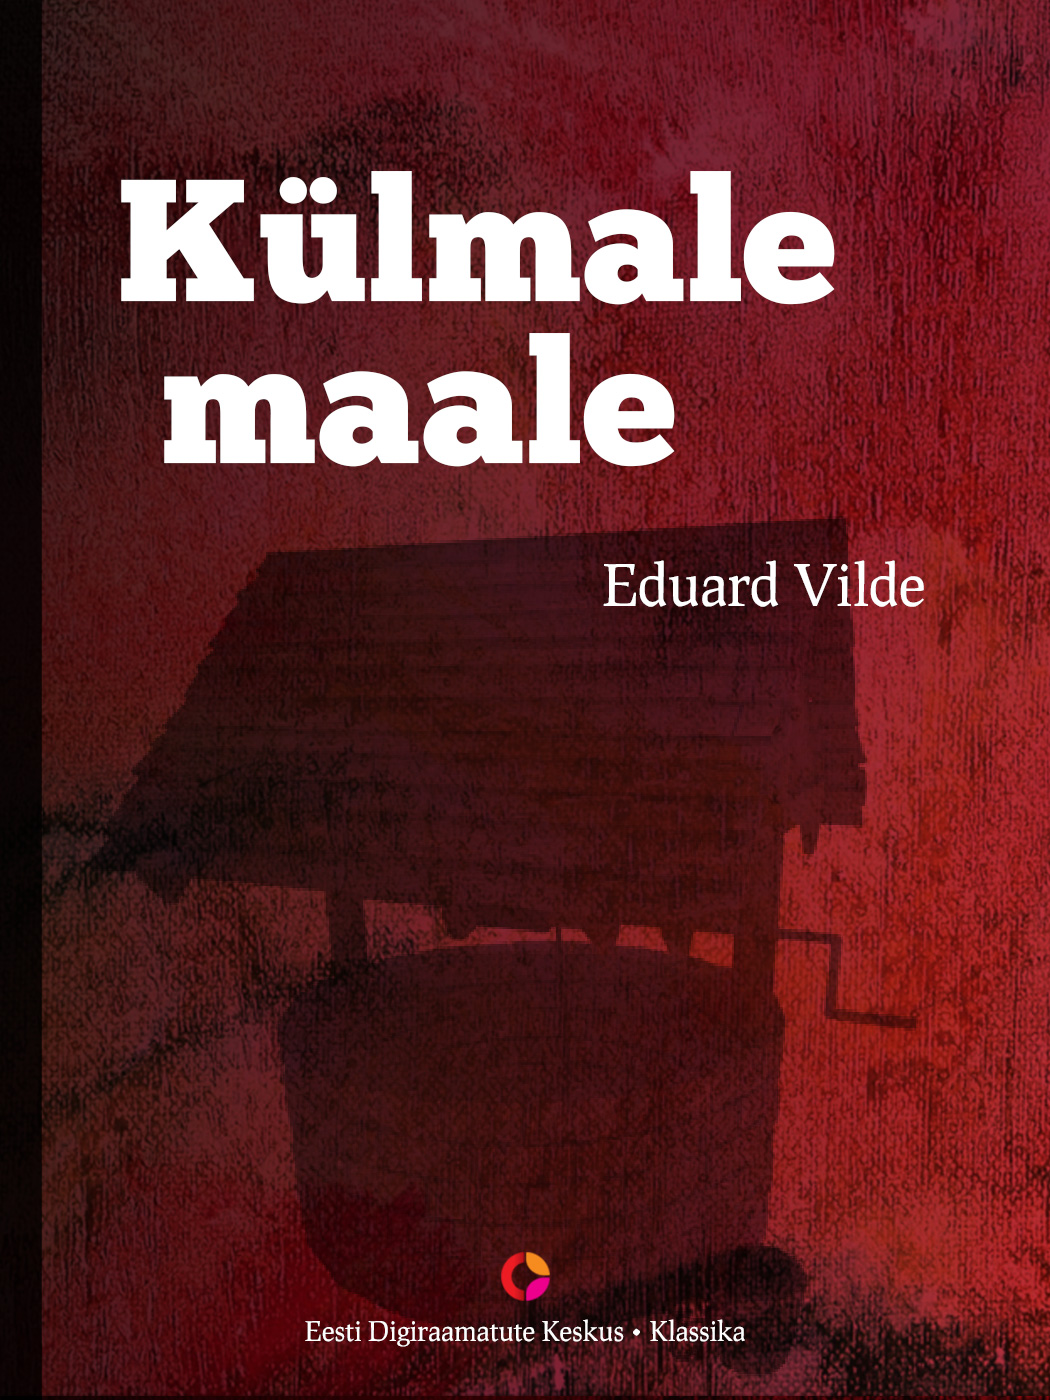 Книга Külmale maale из серии , созданная Eduard Vilde, может относится к жанру Зарубежная классика, Литература 20 века. Стоимость электронной книги Külmale maale с идентификатором 21185028 составляет 341.24 руб.